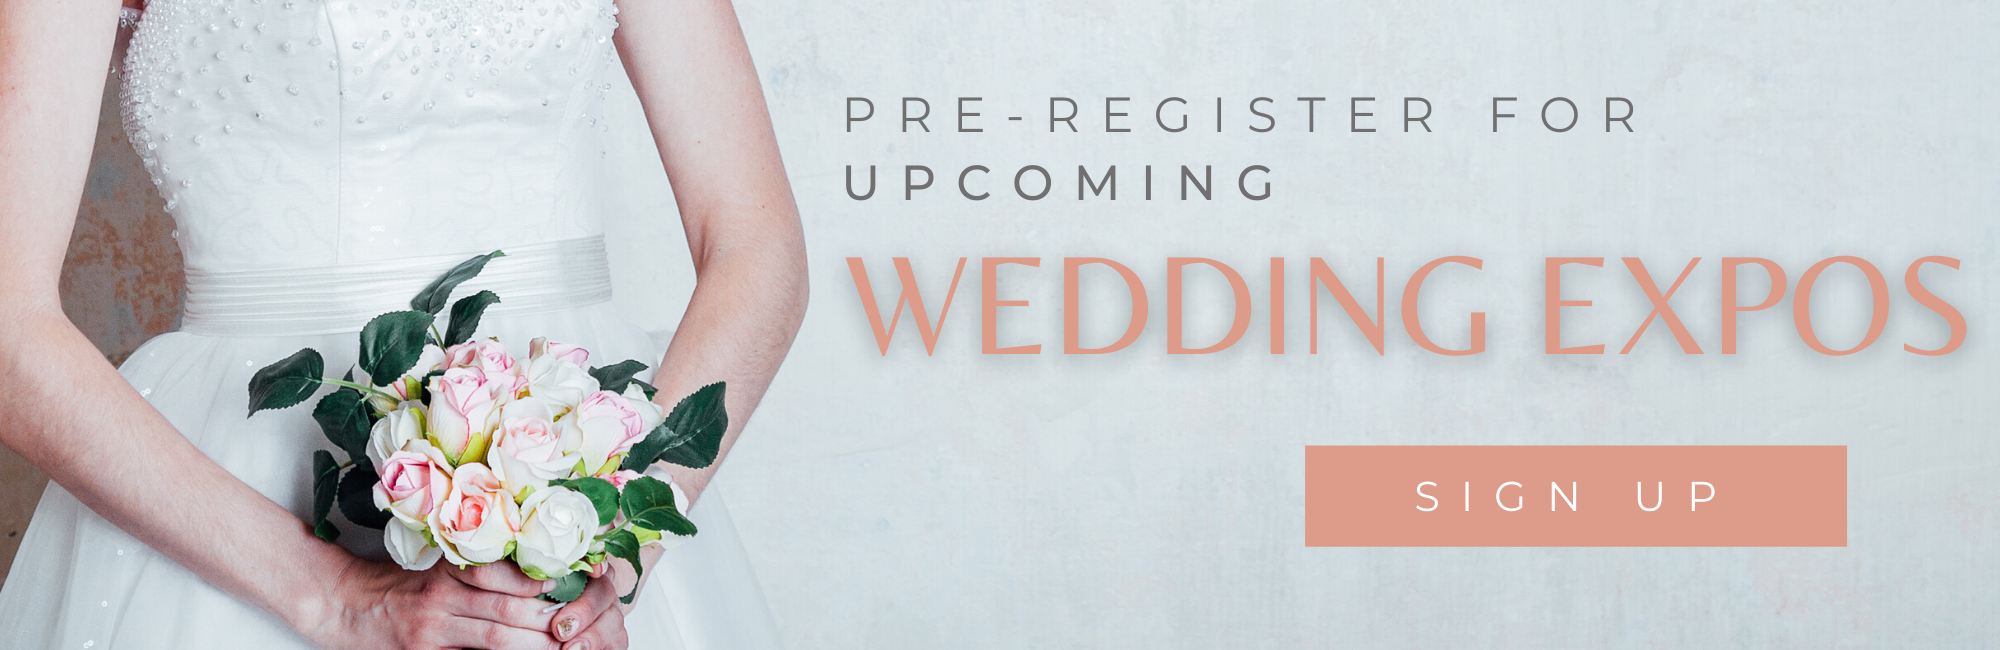 pre-register for wedding expos